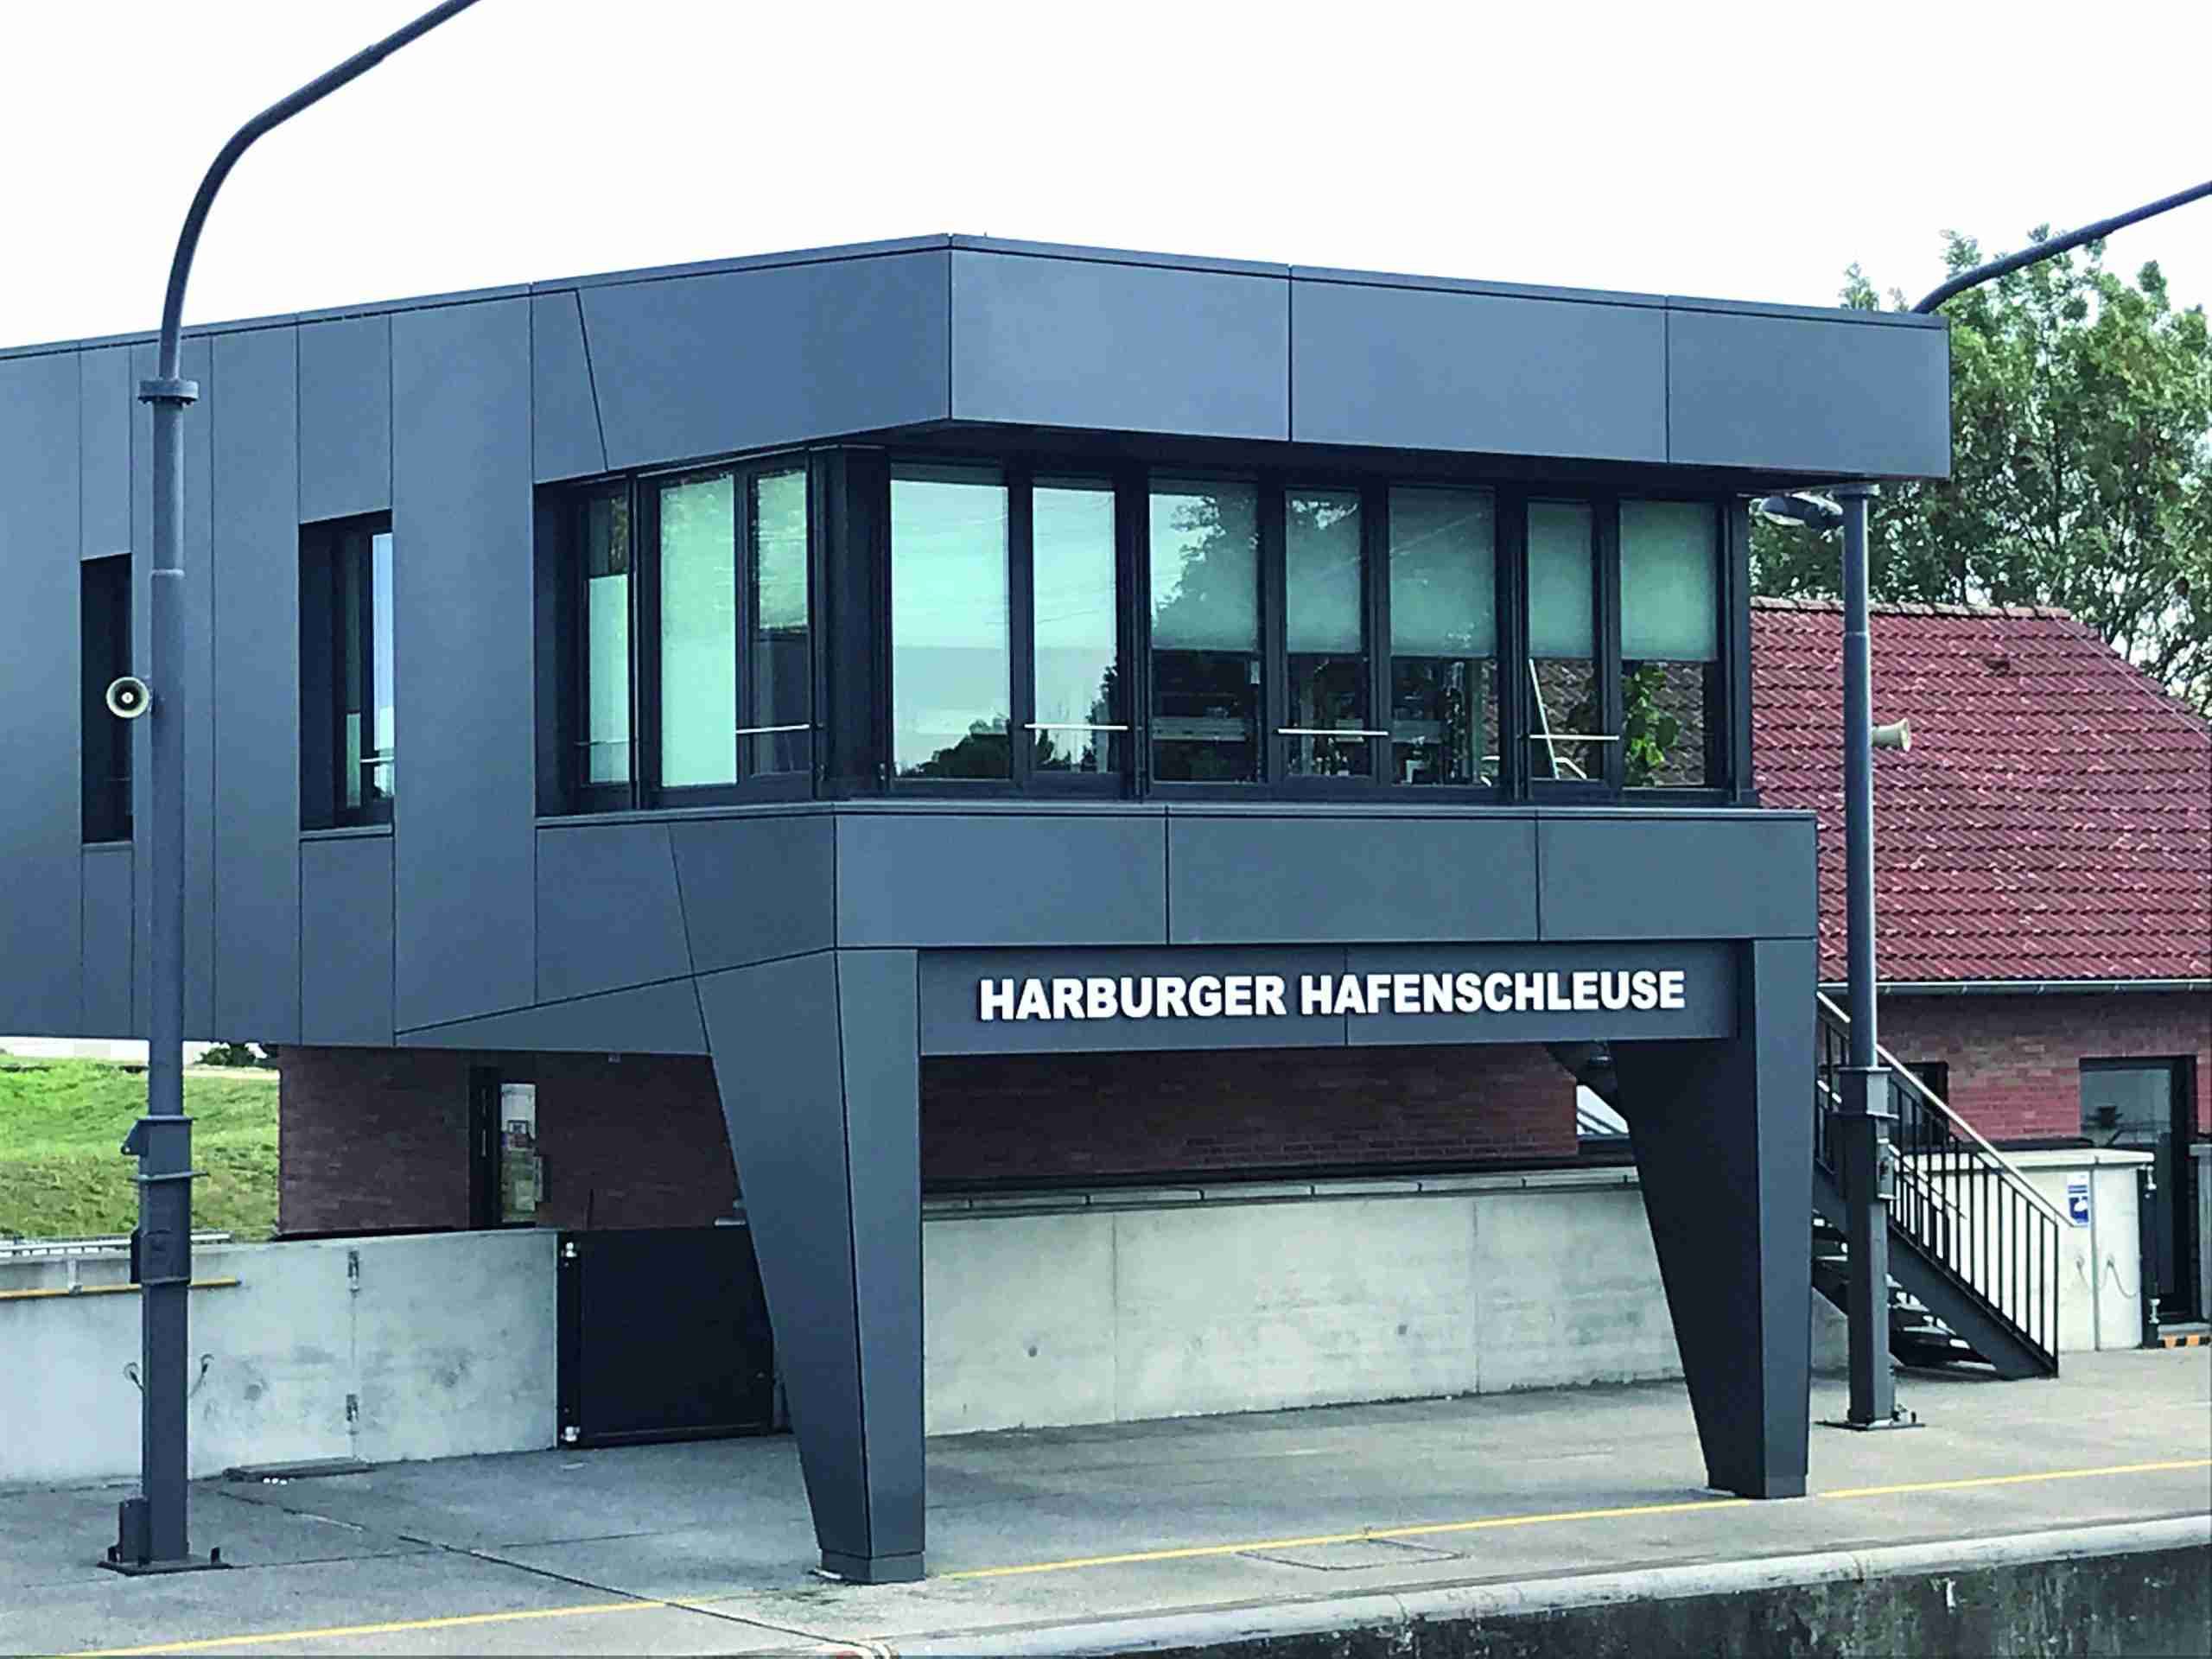 Harburger Hafenschleuse